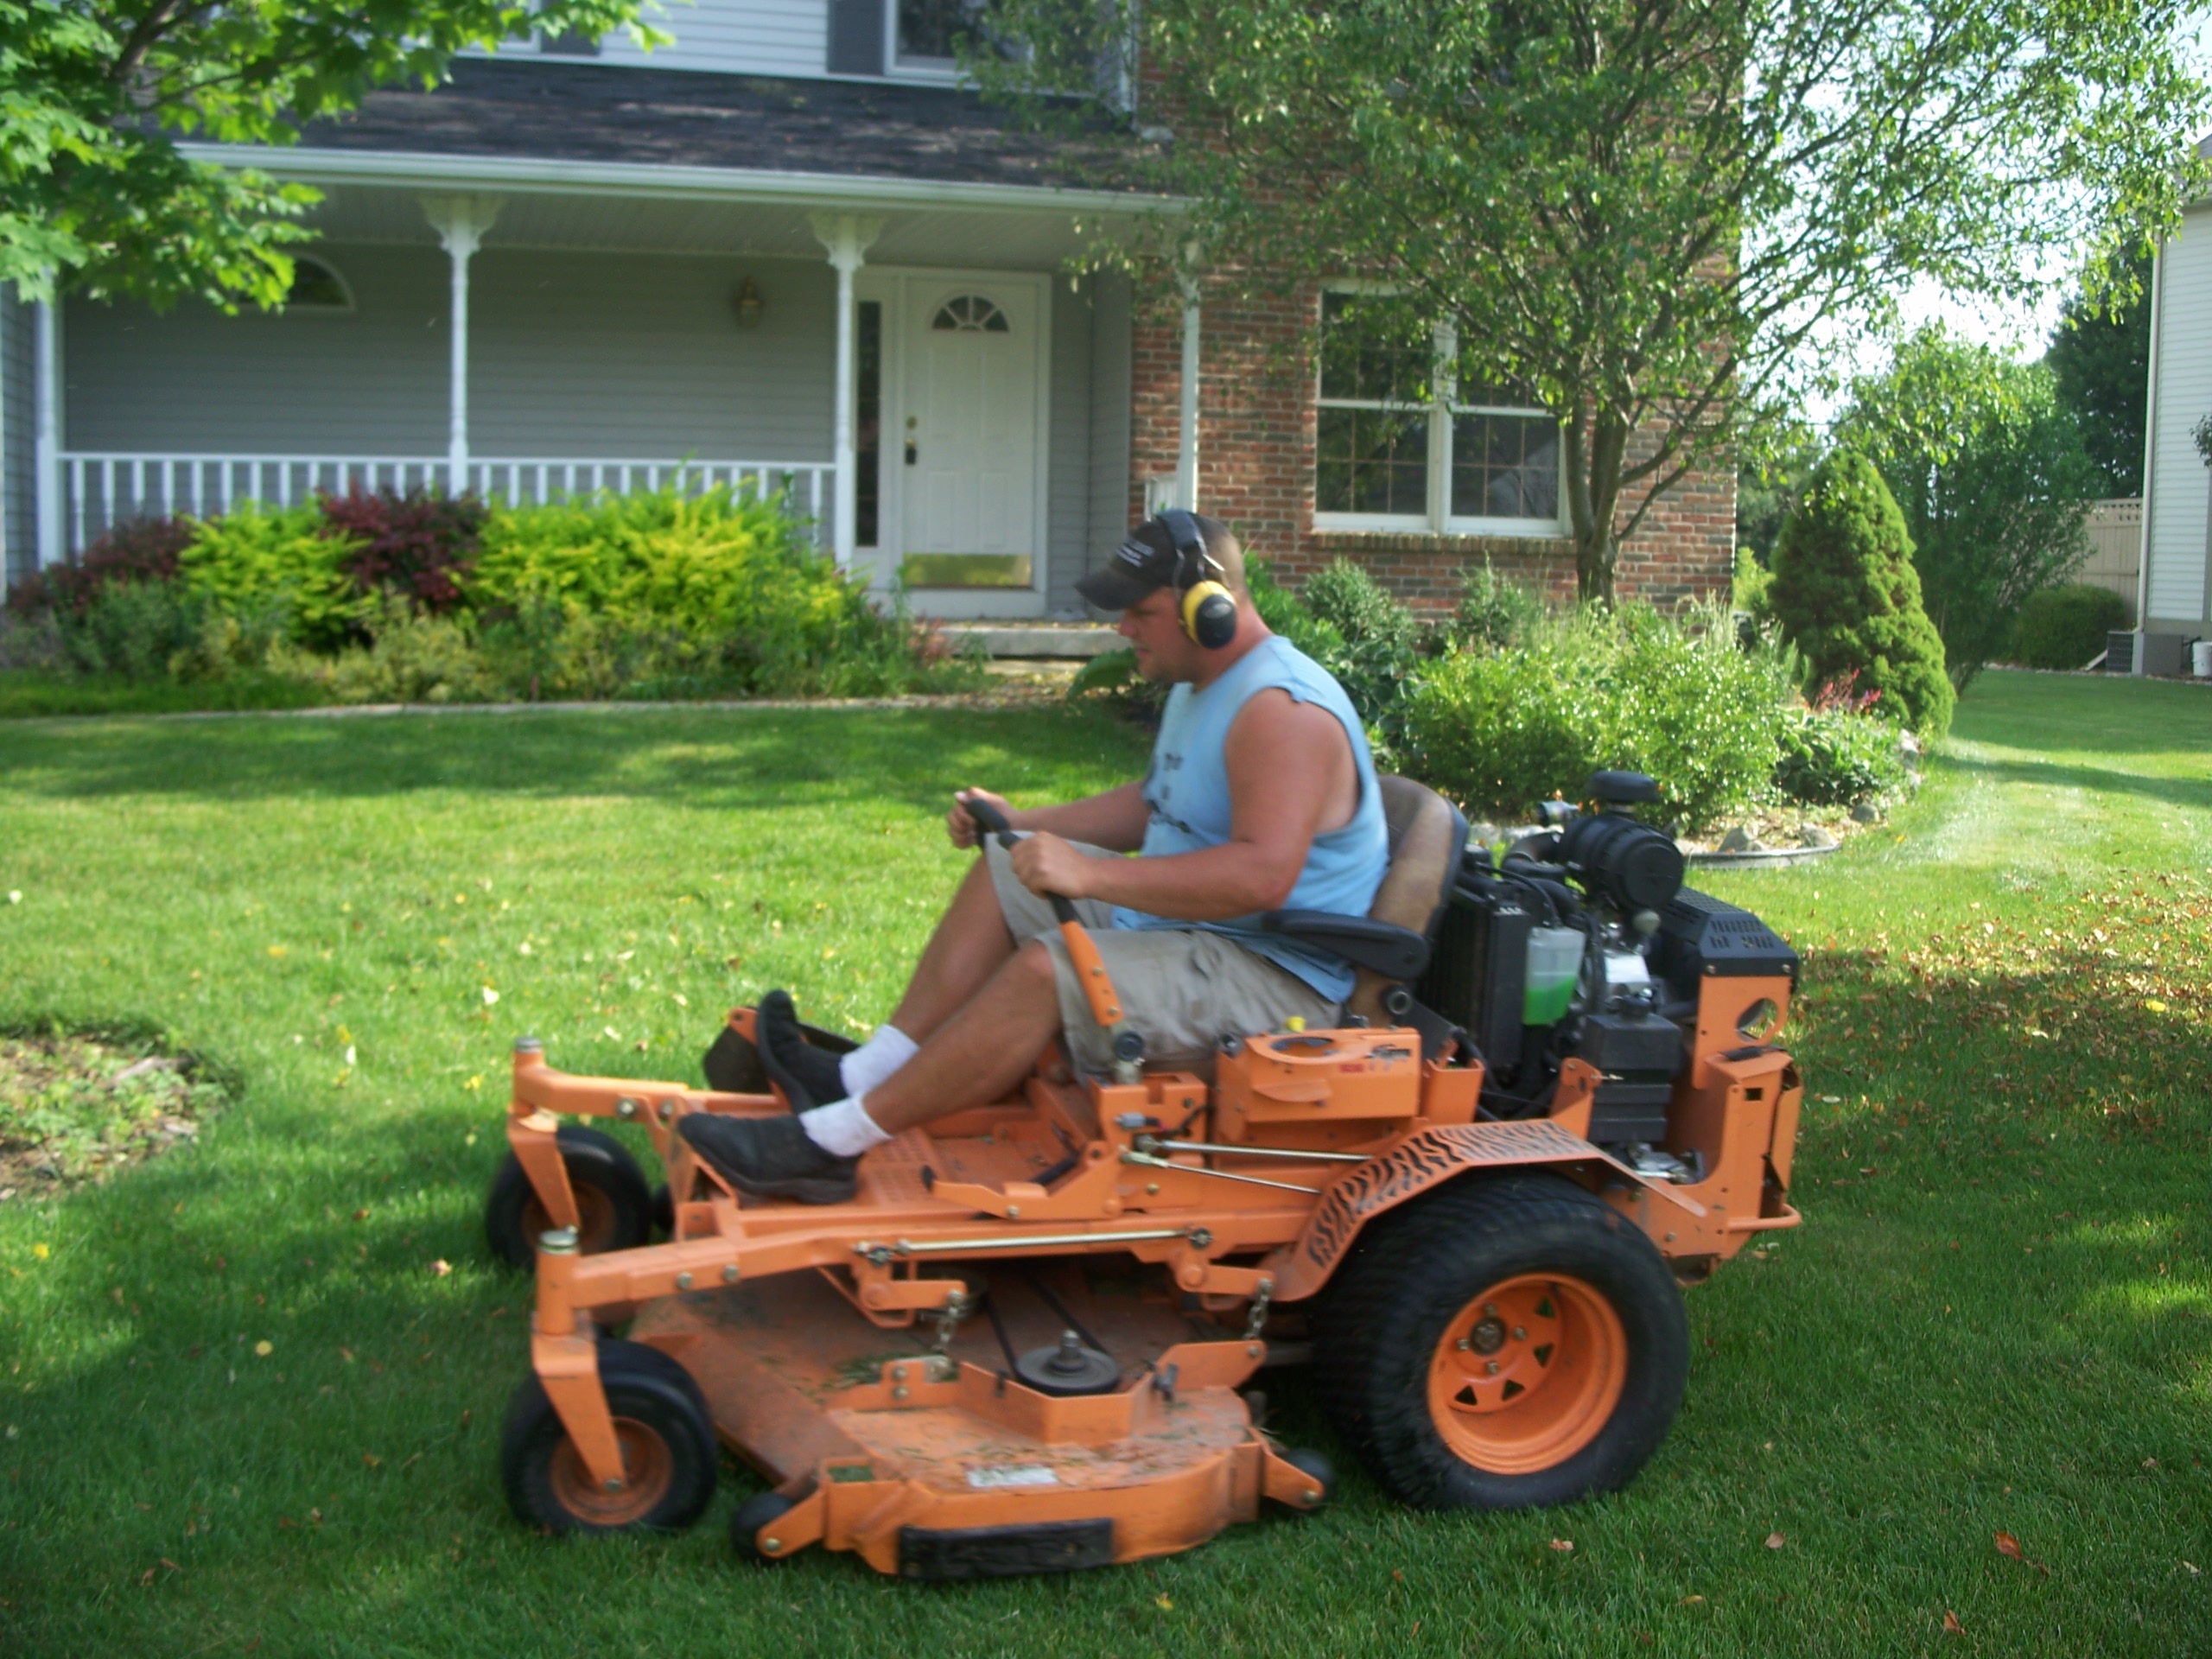 Twin Oaks lawn mowing by owner Dan Izdebski.